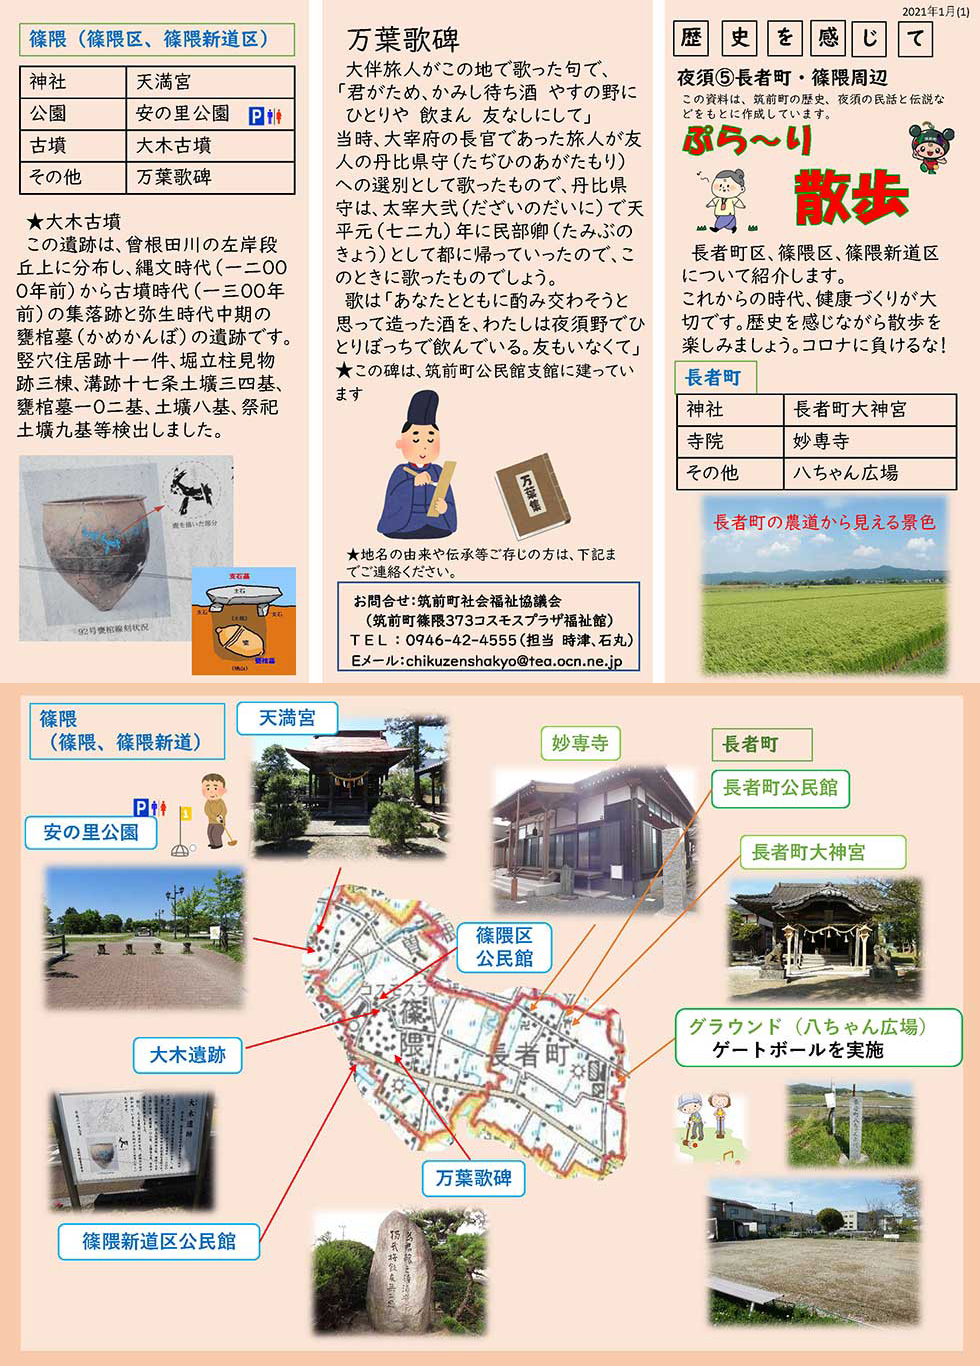 ぷら～り散歩 vol.9 「長者町区」、「篠隈区」、「篠隈新道区」